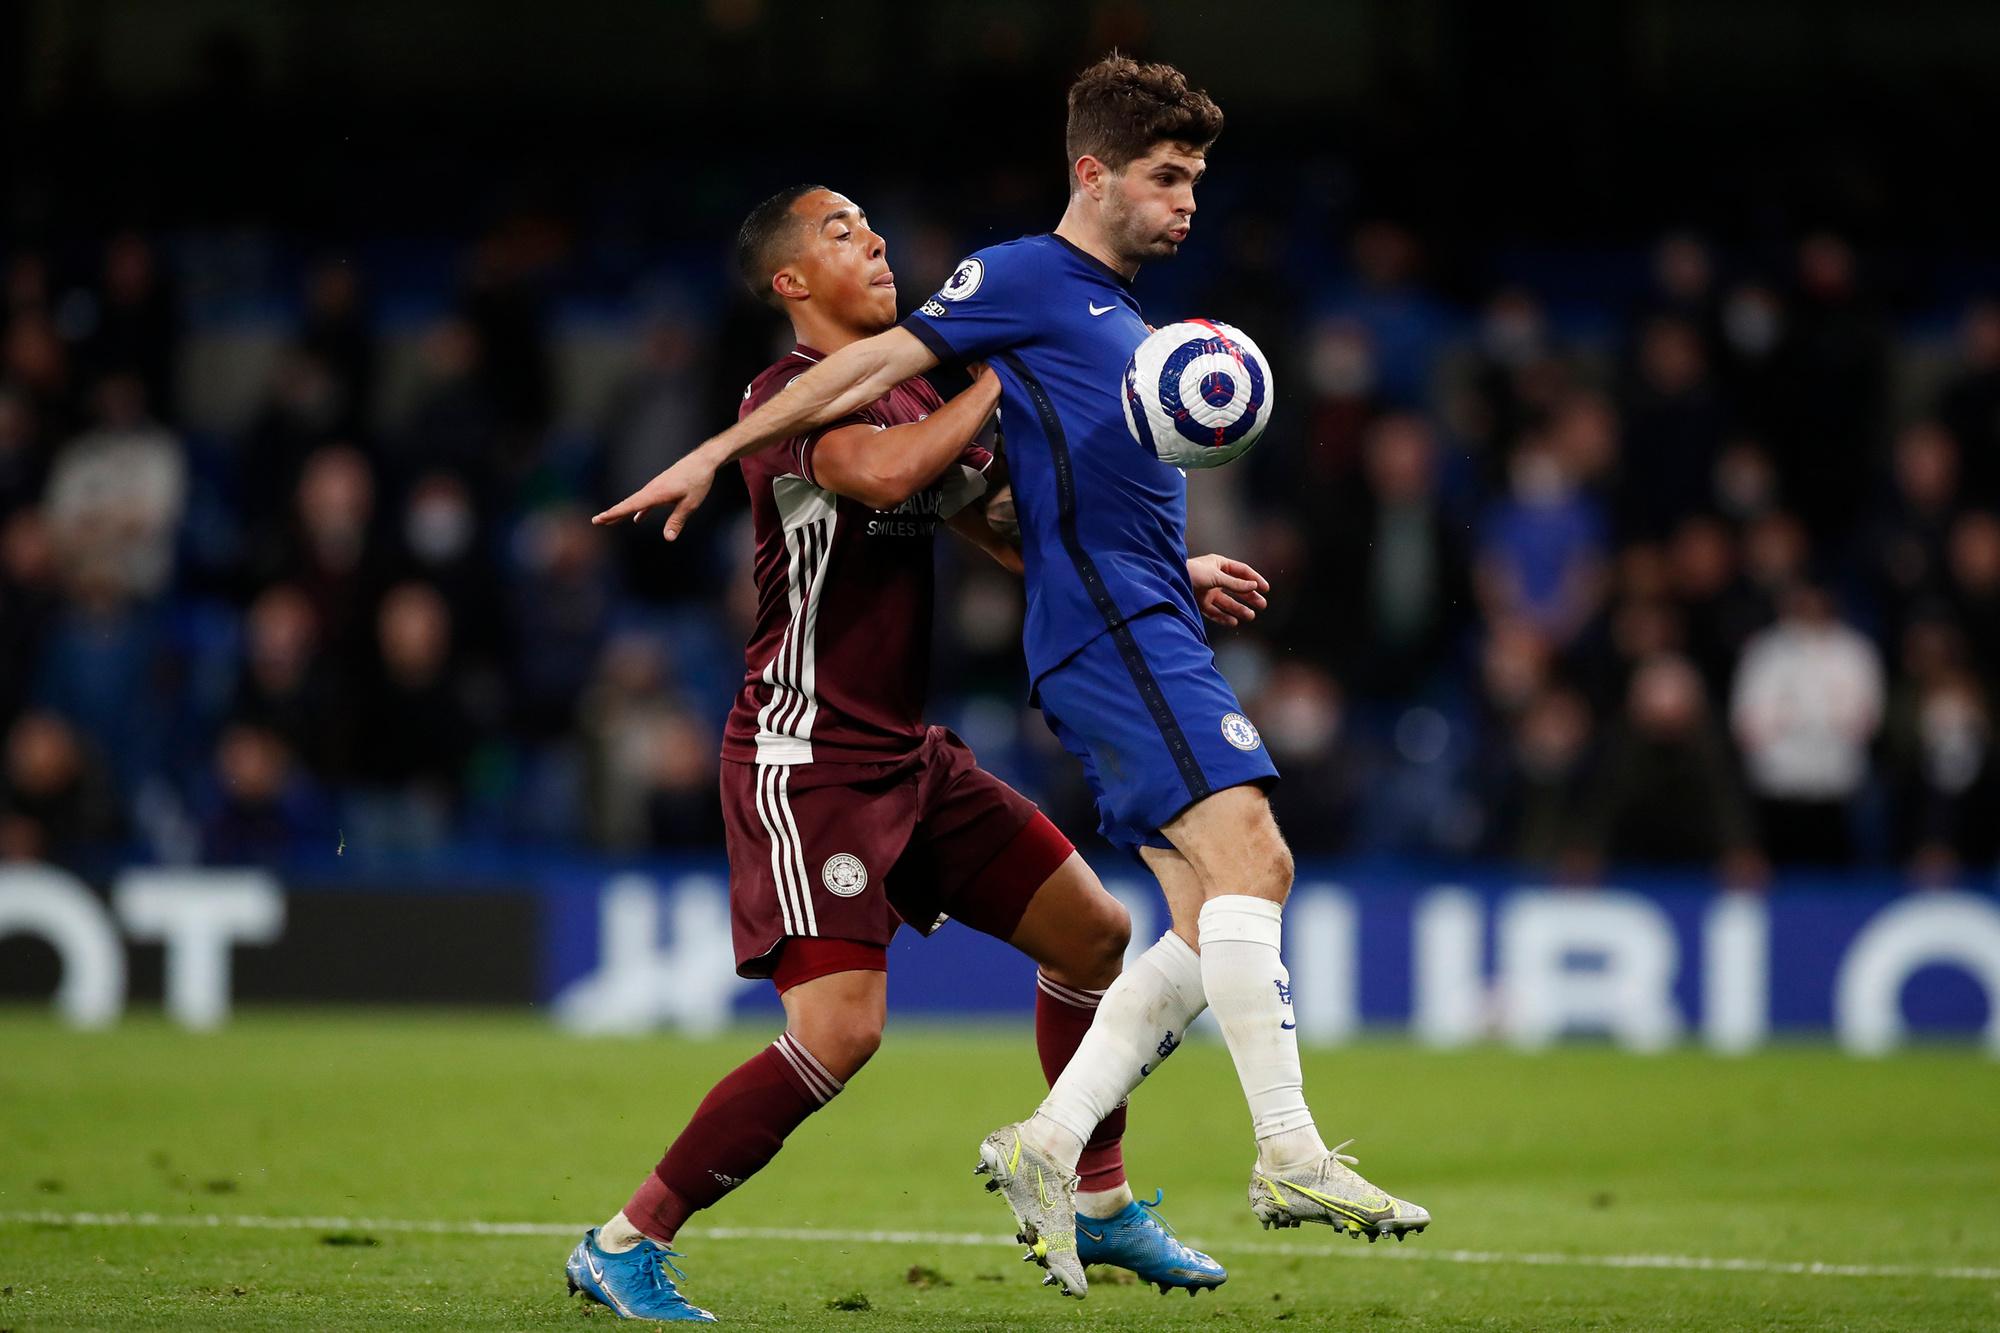 Leicester en Chelsea zitten beide nog in de race voor CL-voetbal volgend seizoen